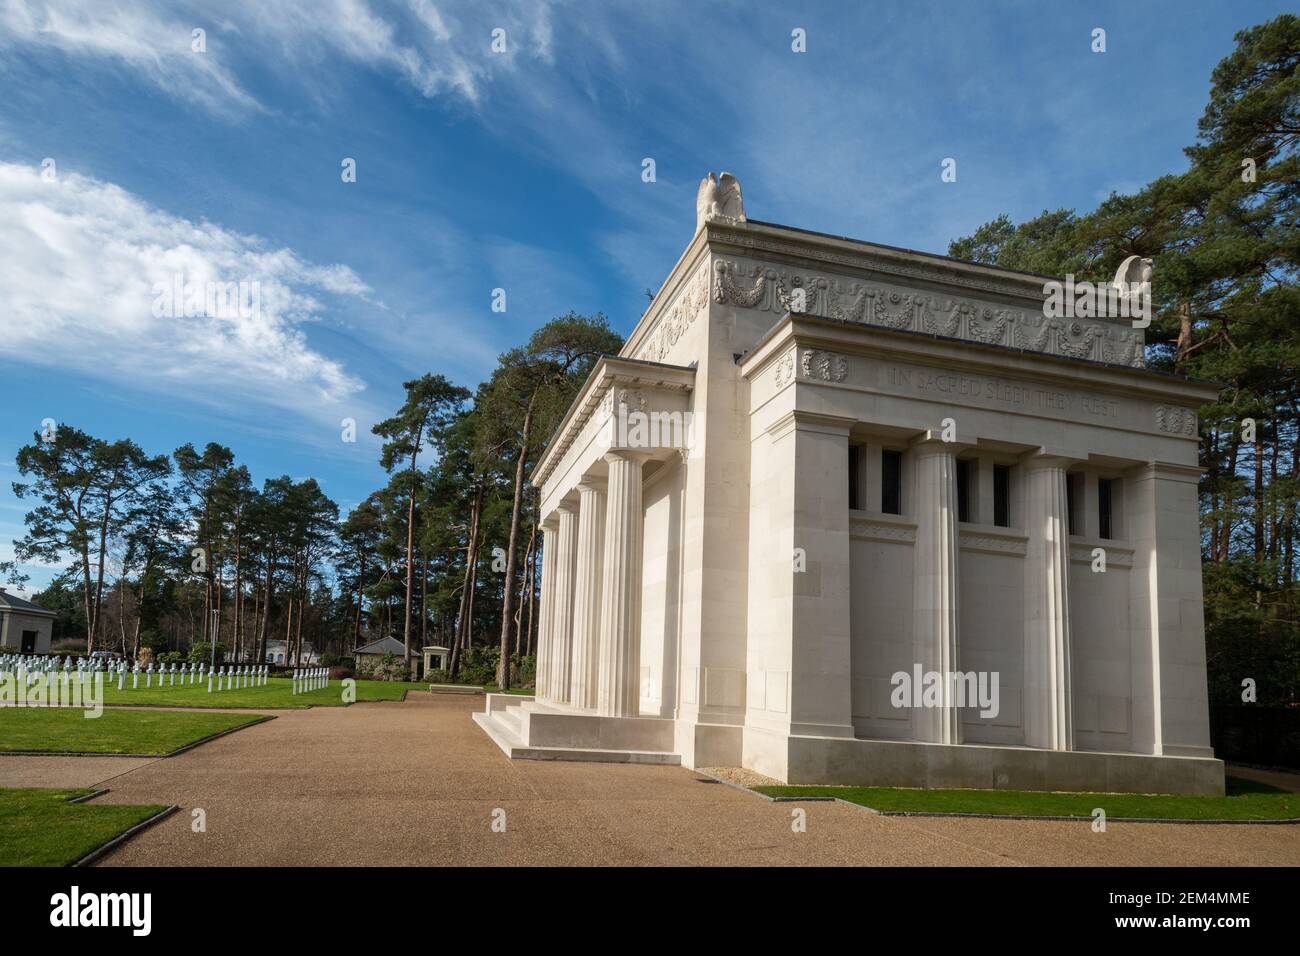 Tombes de guerre américaines et chapelle commémorative du cimetière militaire de Brookwood, Surrey, Angleterre, le seul cimetière militaire américain de la première Guerre mondiale au Royaume-Uni Banque D'Images